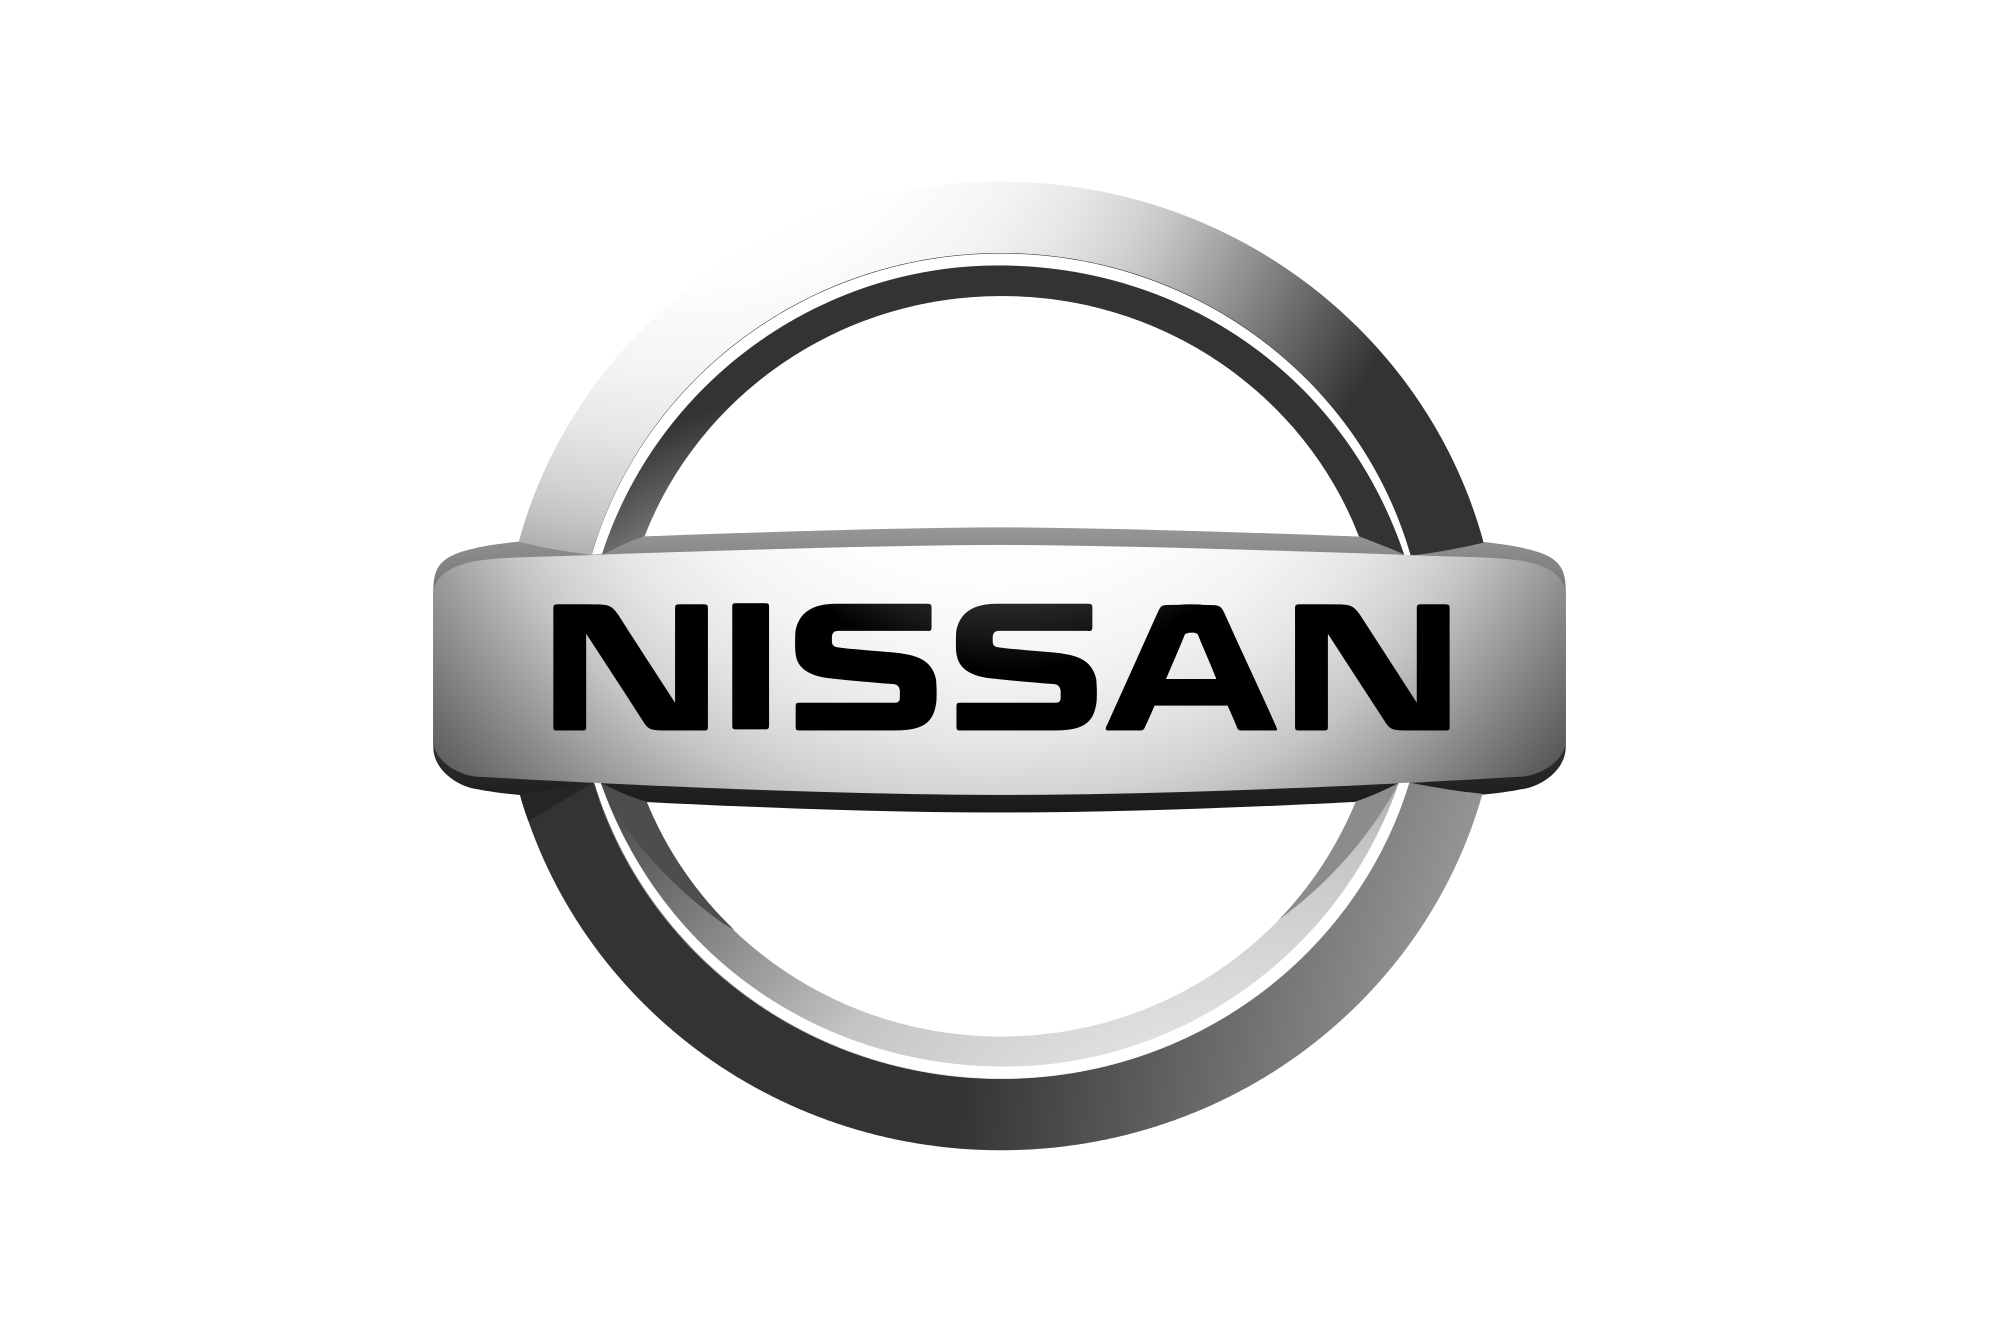 Ανακοίνωση σχετικά με την αναχώρηση του πρώην προέδρου της Nissan, από την Ιαπωνία